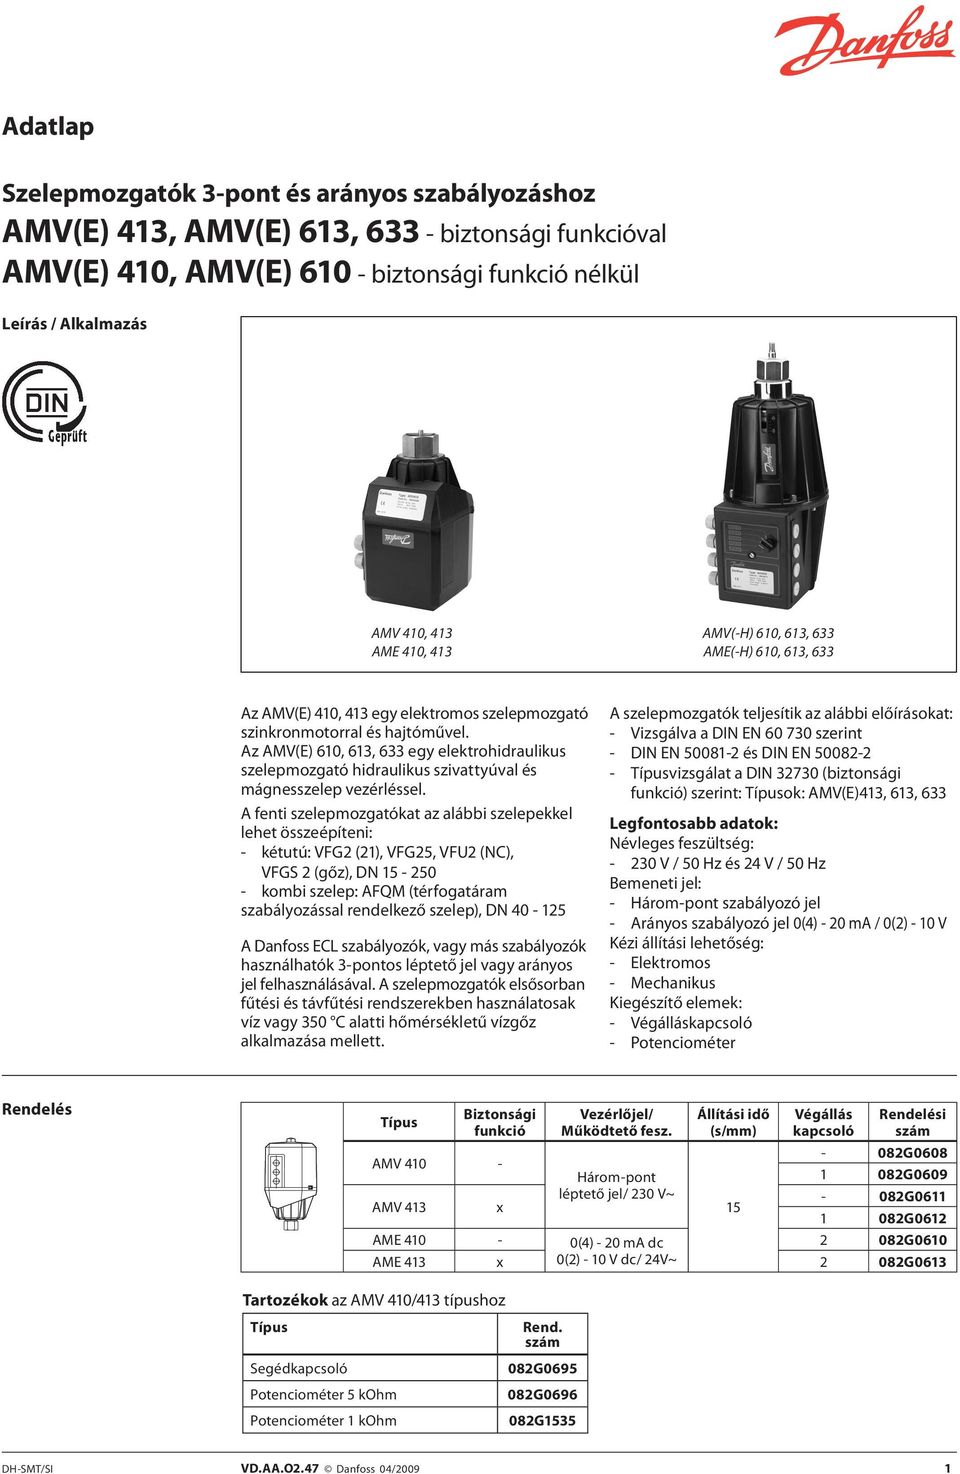 Az AMV(E) 610, 613, 633 egy elektrohidraulikus szelepmozgató hidraulikus szivattyúval és mágnesszelep vezérléssel.